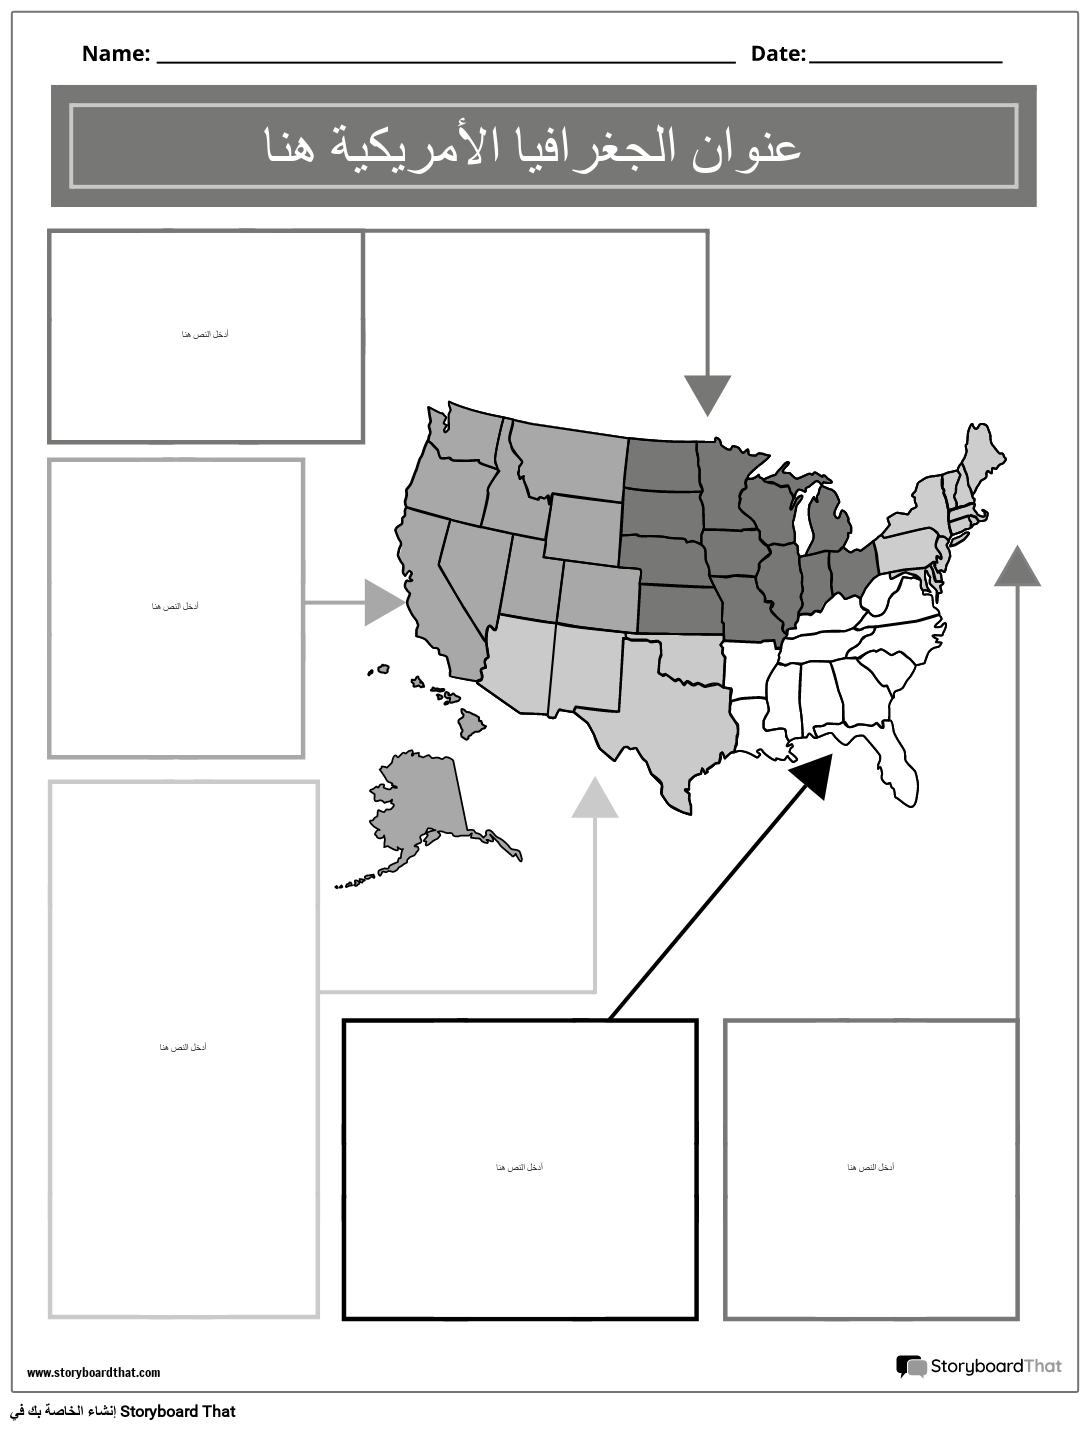 صورة جغرافية للولايات المتحدة بالأبيض والأسود 2